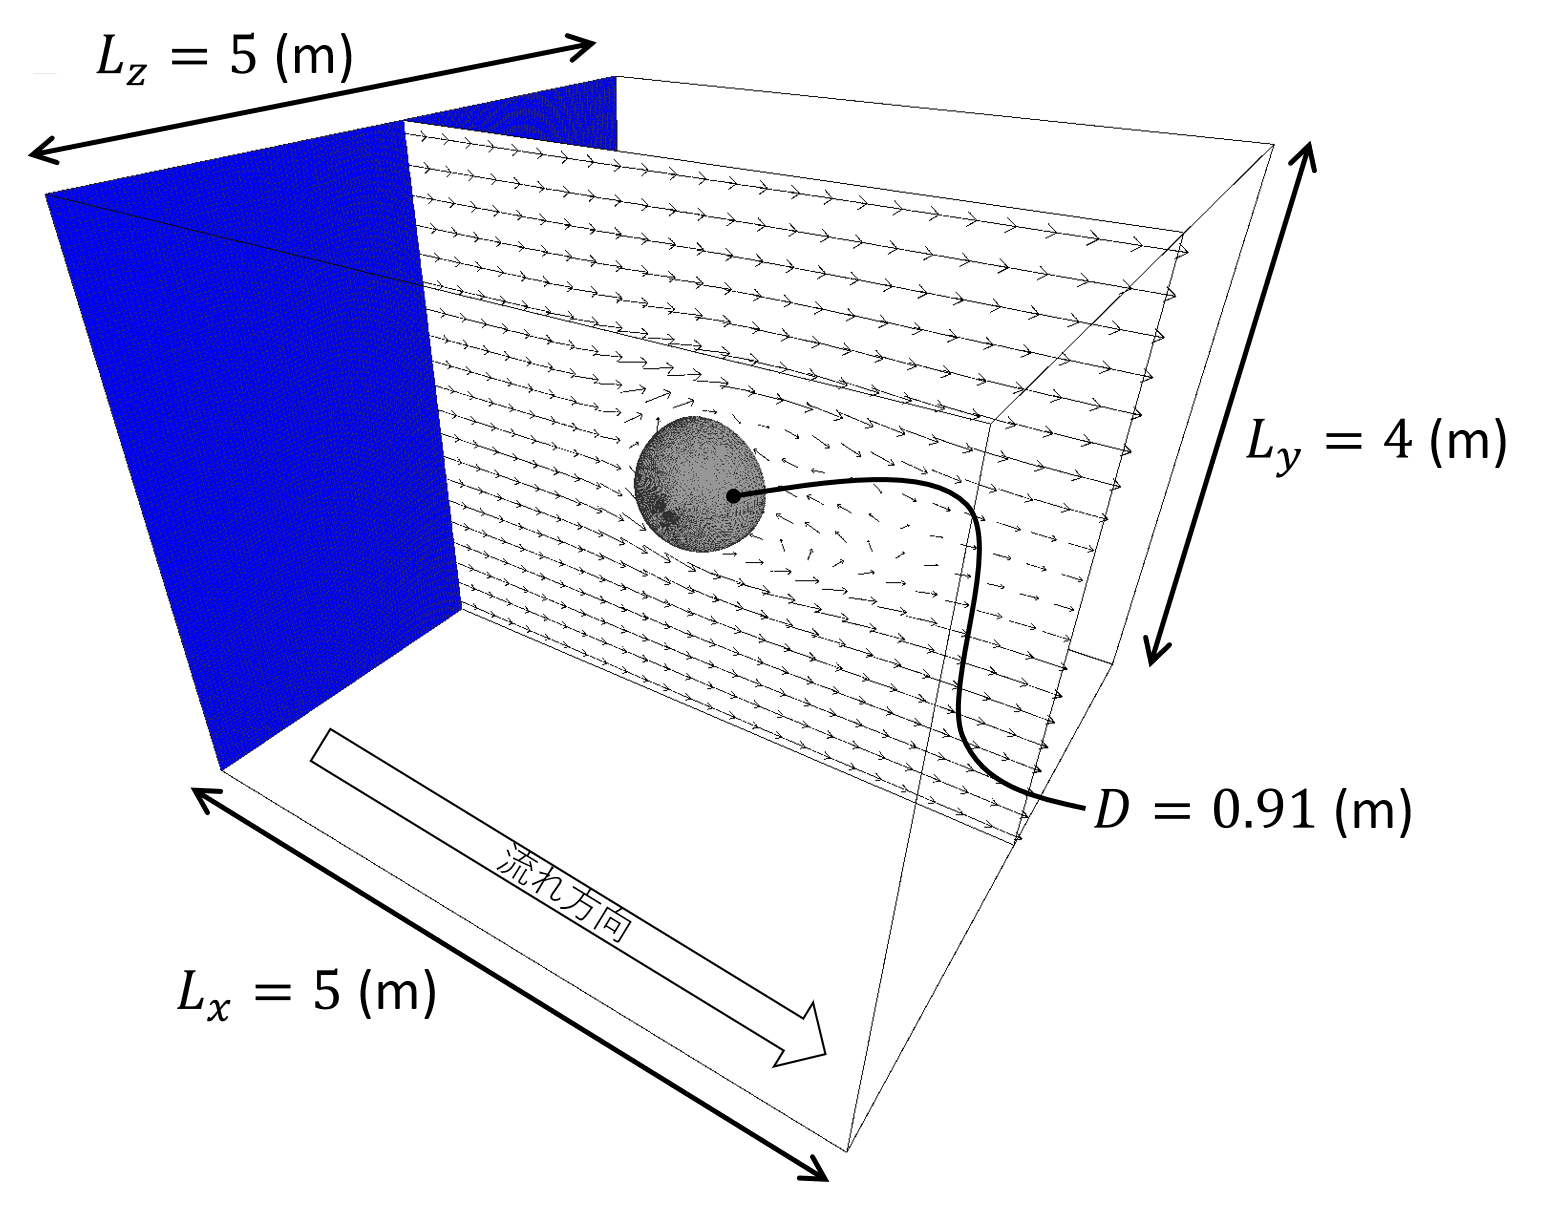 球周りの流れシミュレーションの概略図。